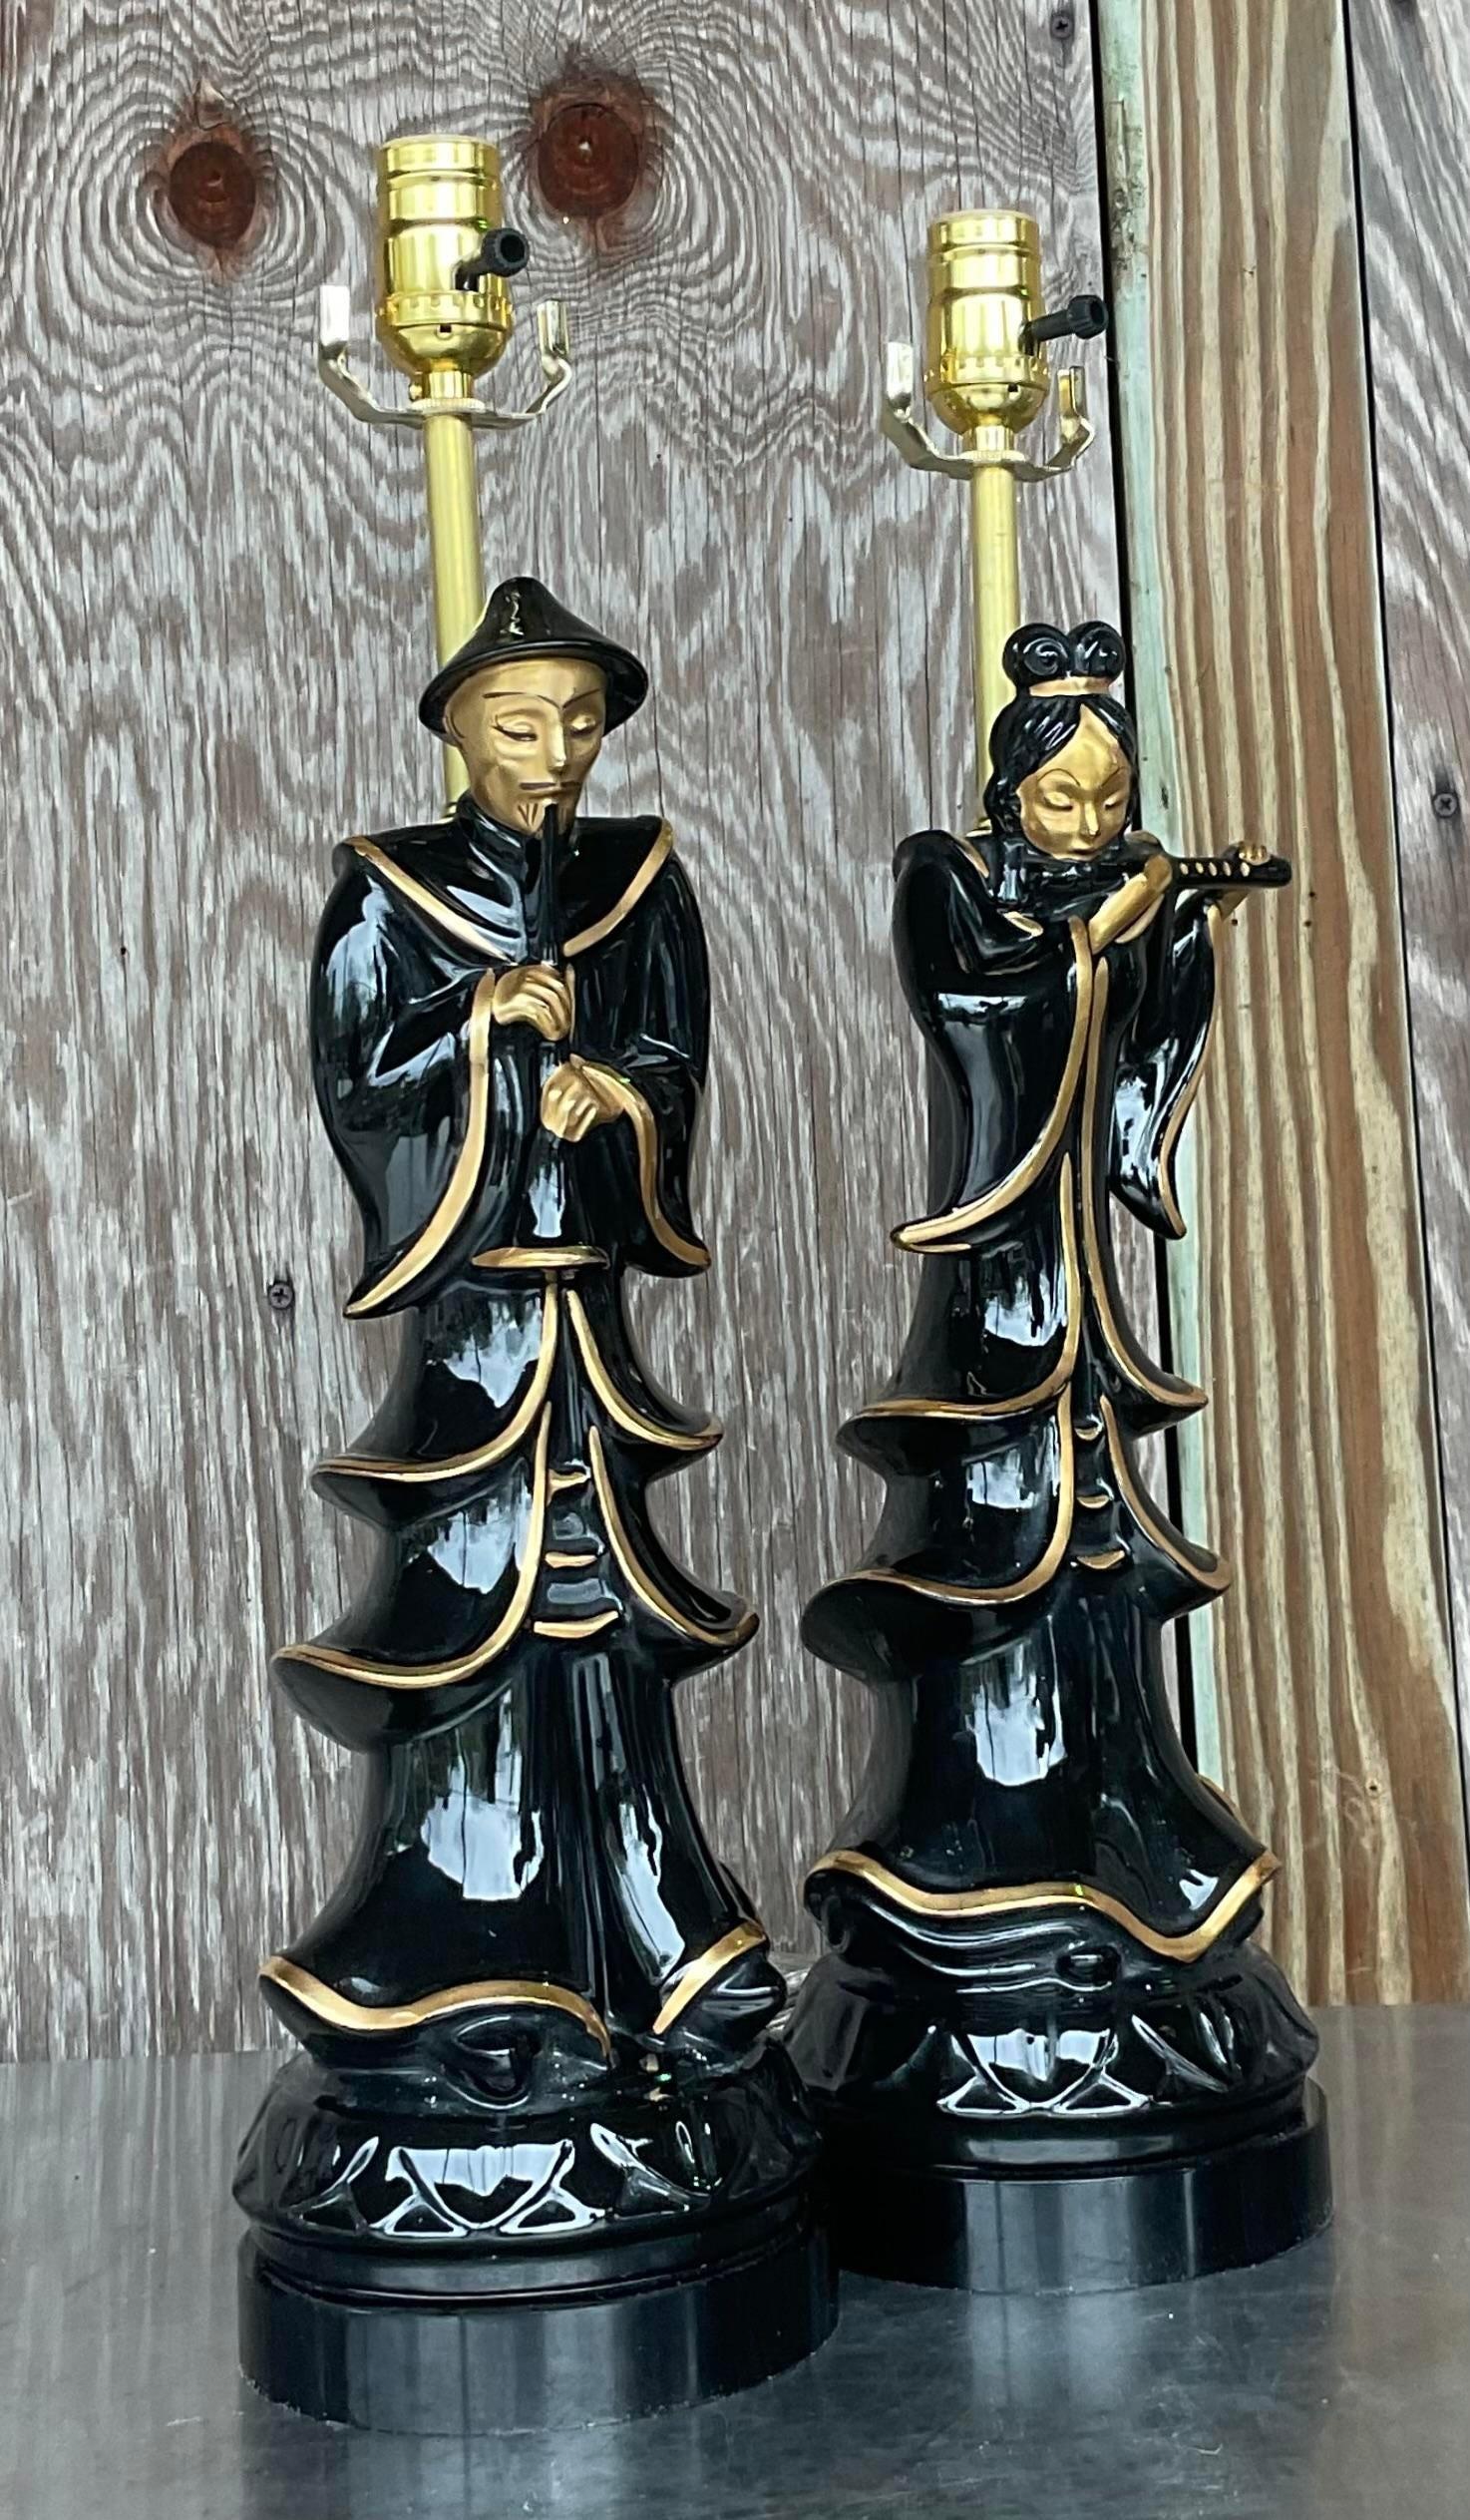 Une fabuleuse paire de lampes asiatiques vintage. Un couple d'empereurs glamour dans une élégante céramique émaillée noire avec des touches dorées. Entièrement restauré avec un câblage et une quincaillerie neufs et des socles en lucite noire. Acquis